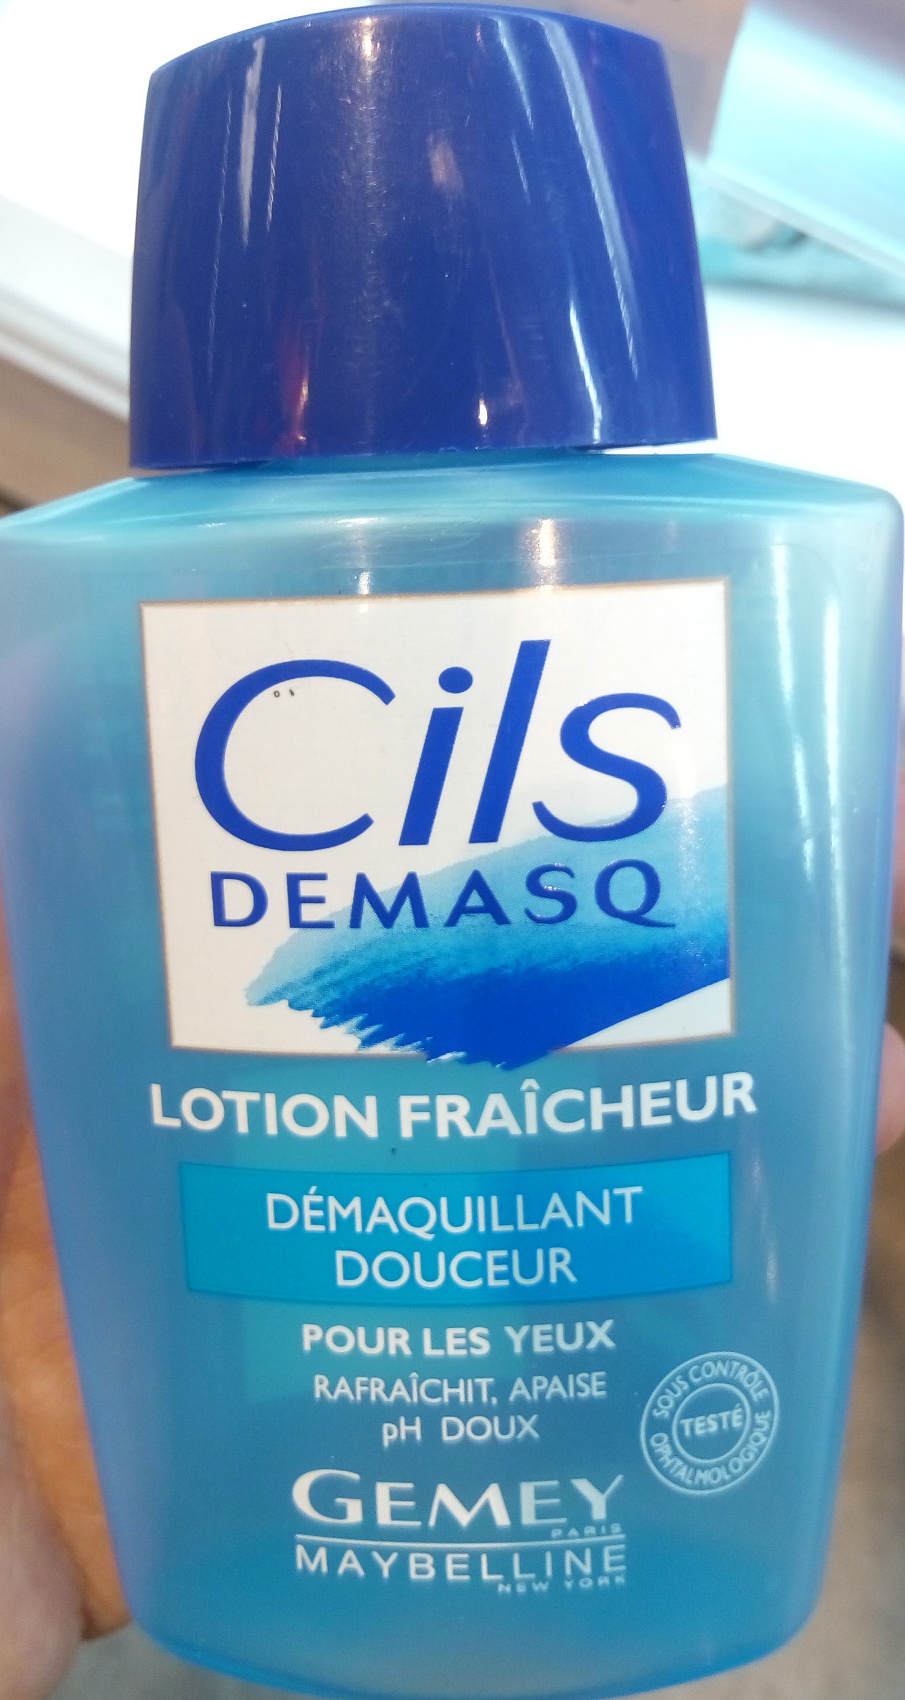 Cils Demasq - Lotion fraîcheur démaquillant douceur pour les yeux - Product - fr